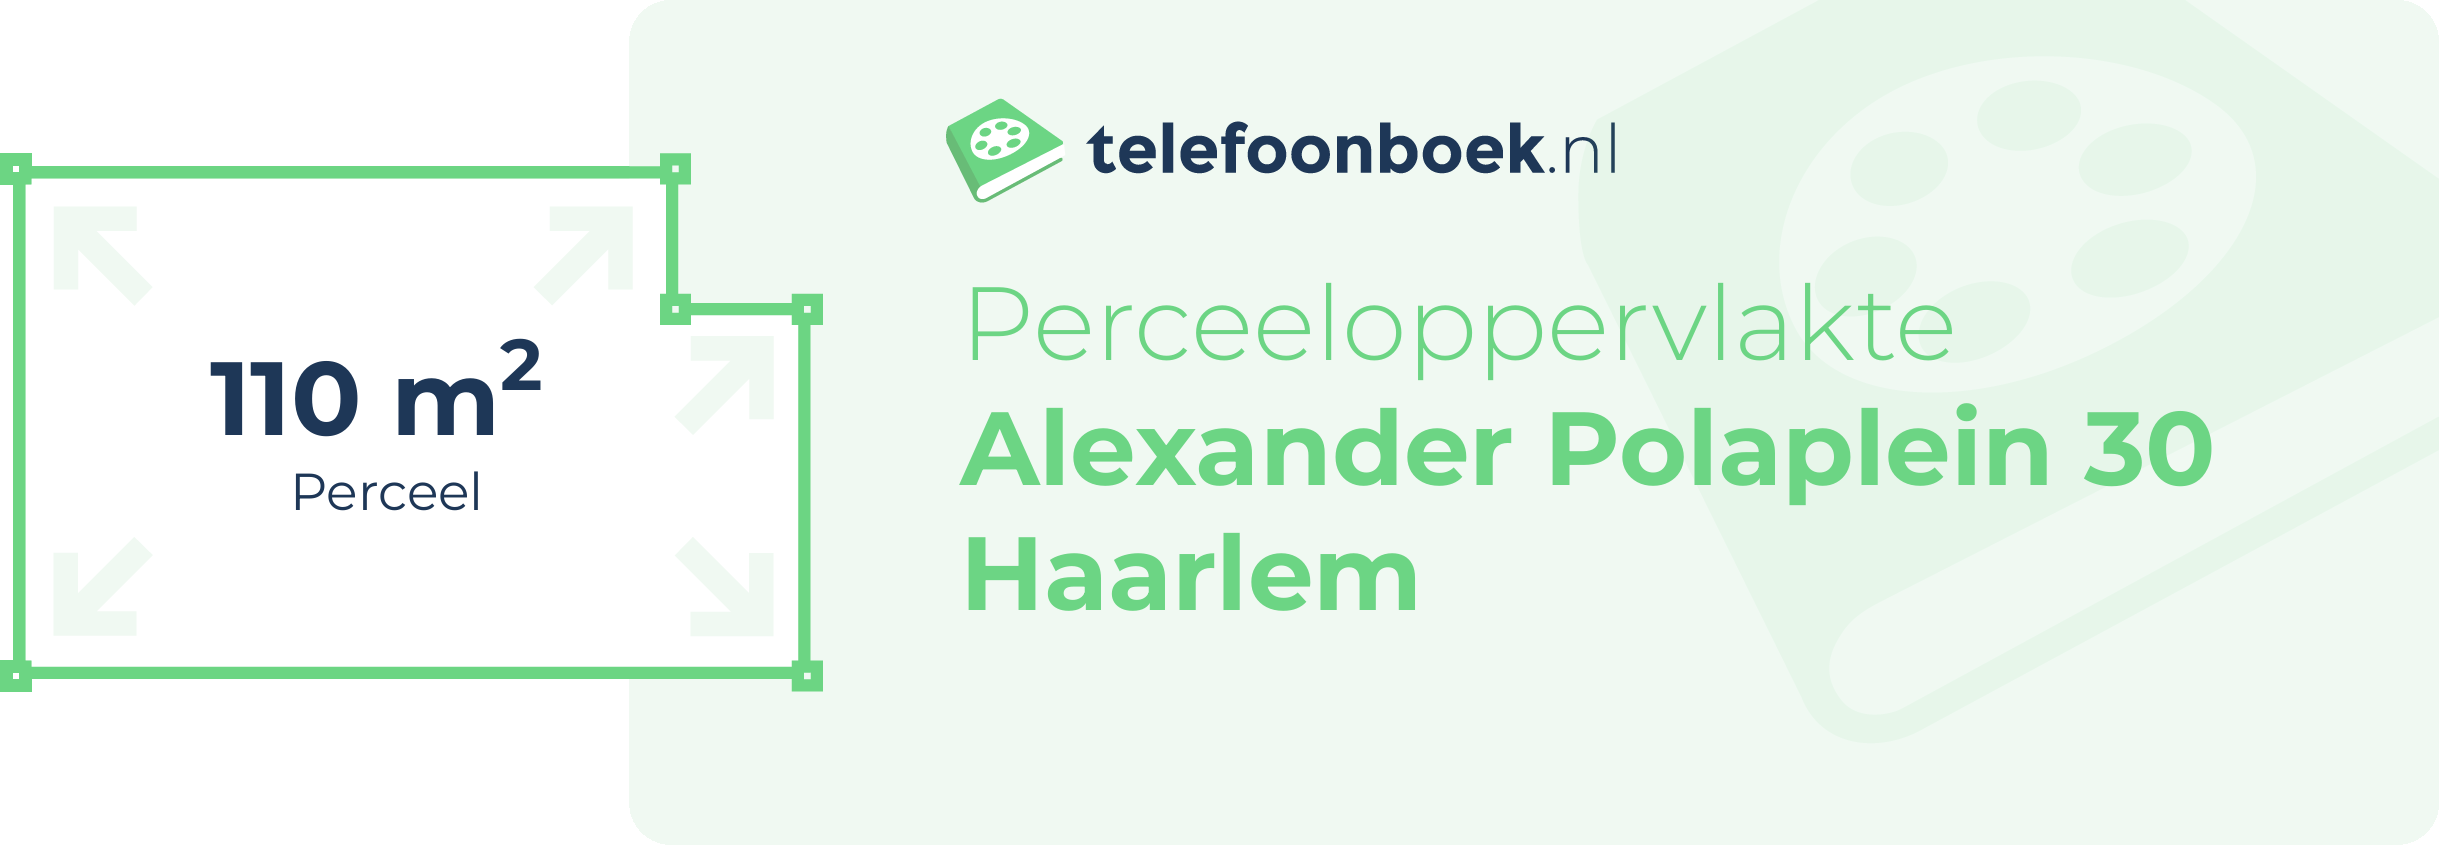 Perceeloppervlakte Alexander Polaplein 30 Haarlem